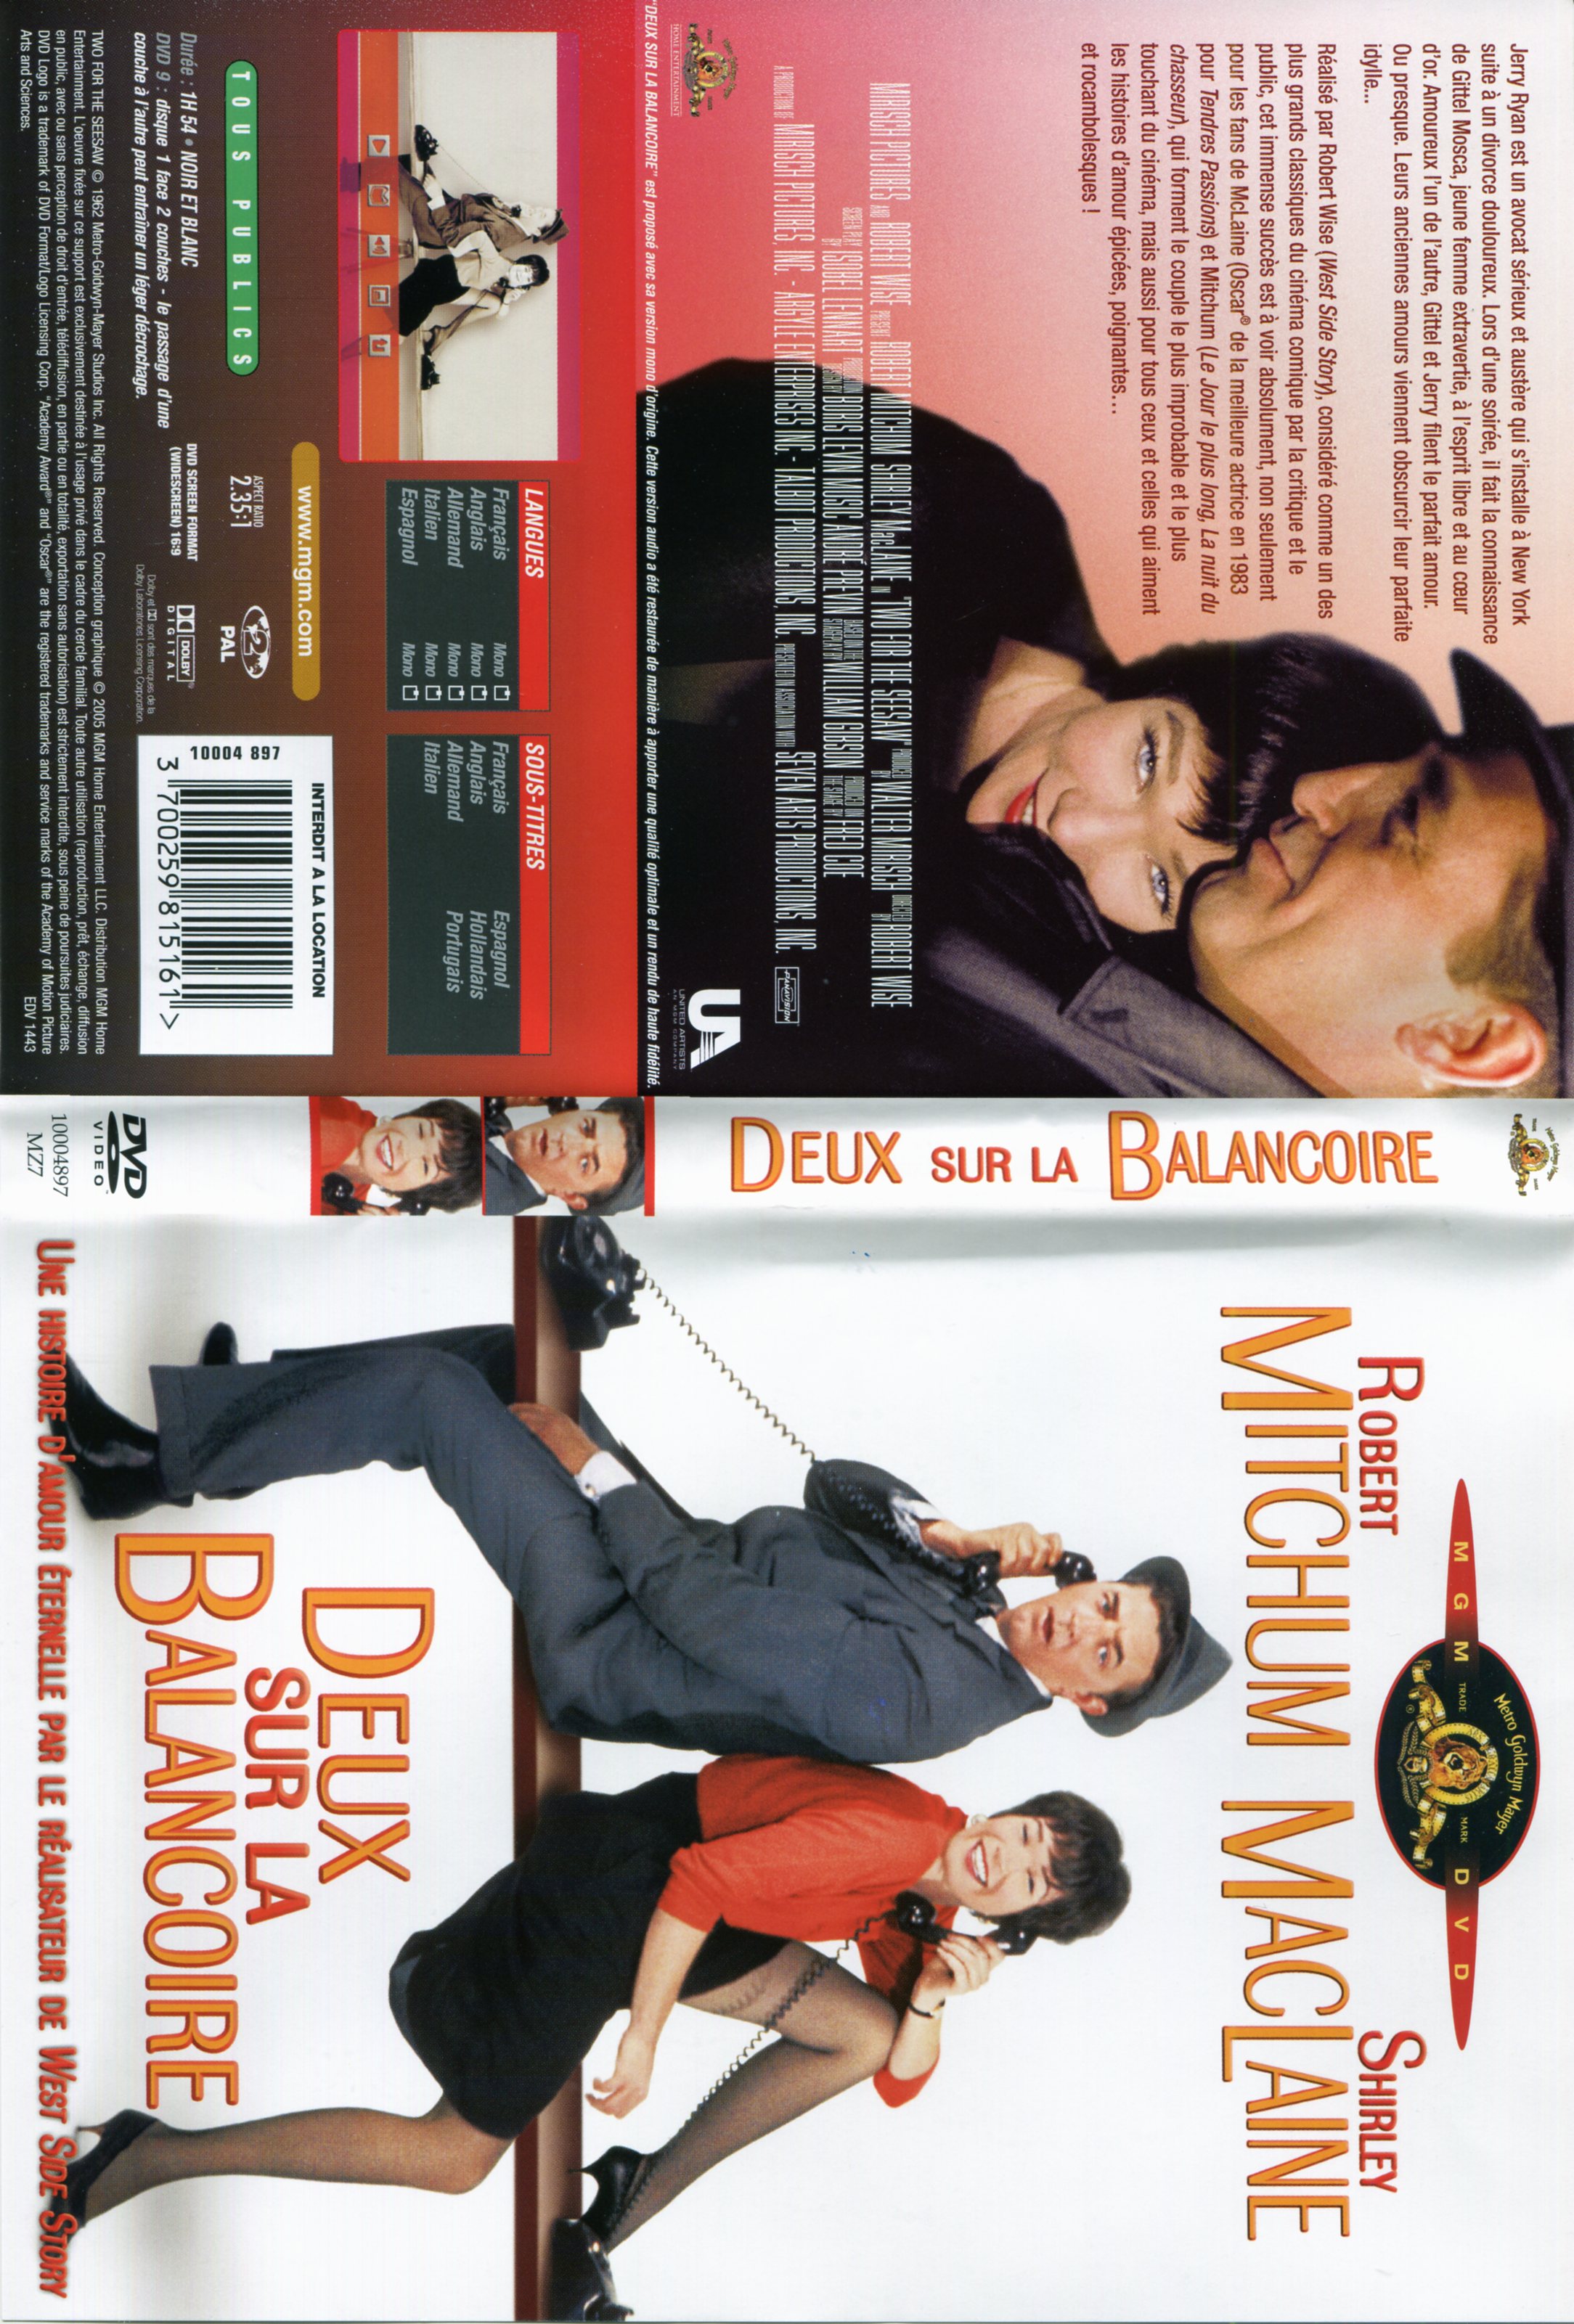 Jaquette DVD Deux sur la balanoire (1962)